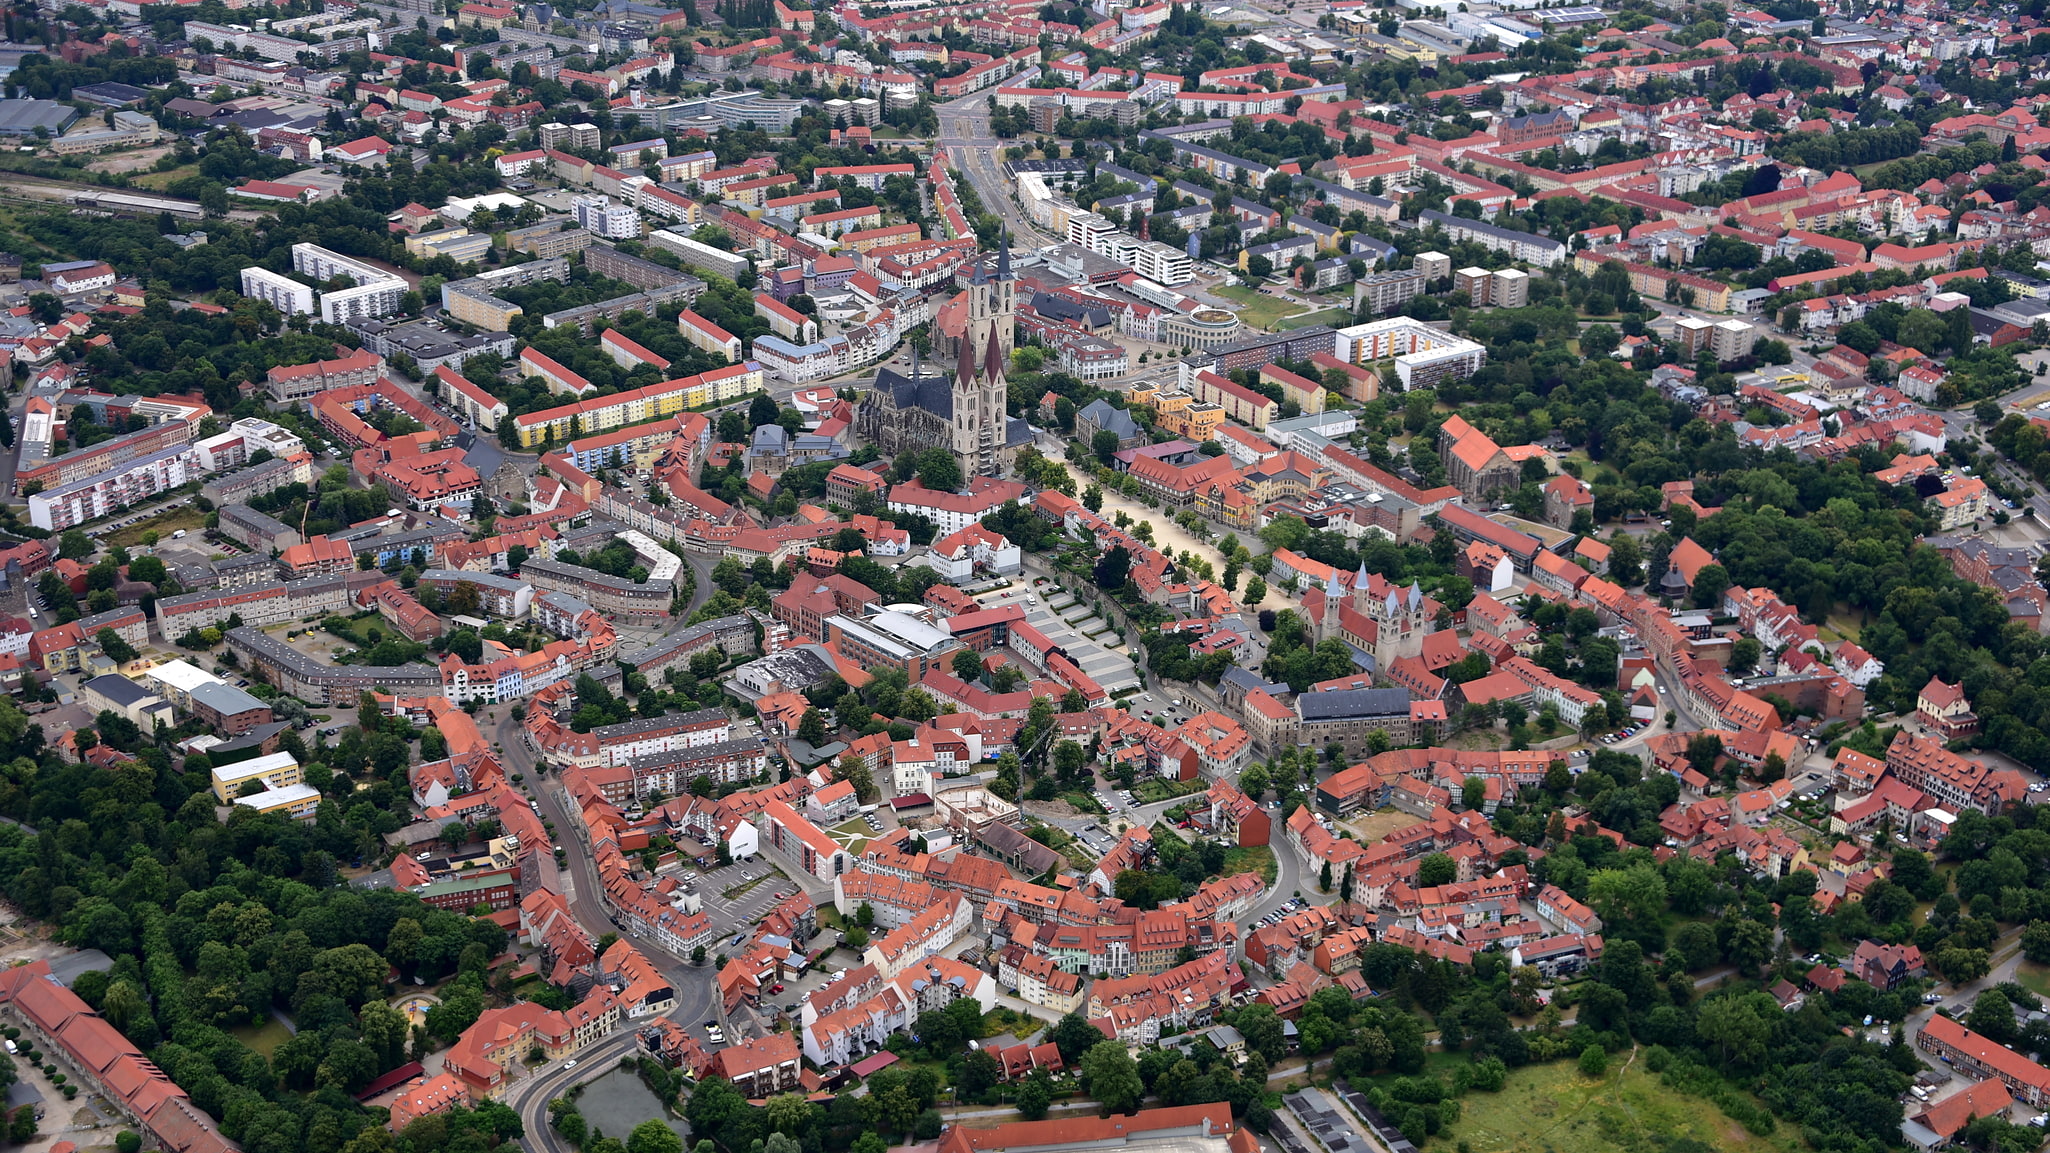 Halberstadt, Germany